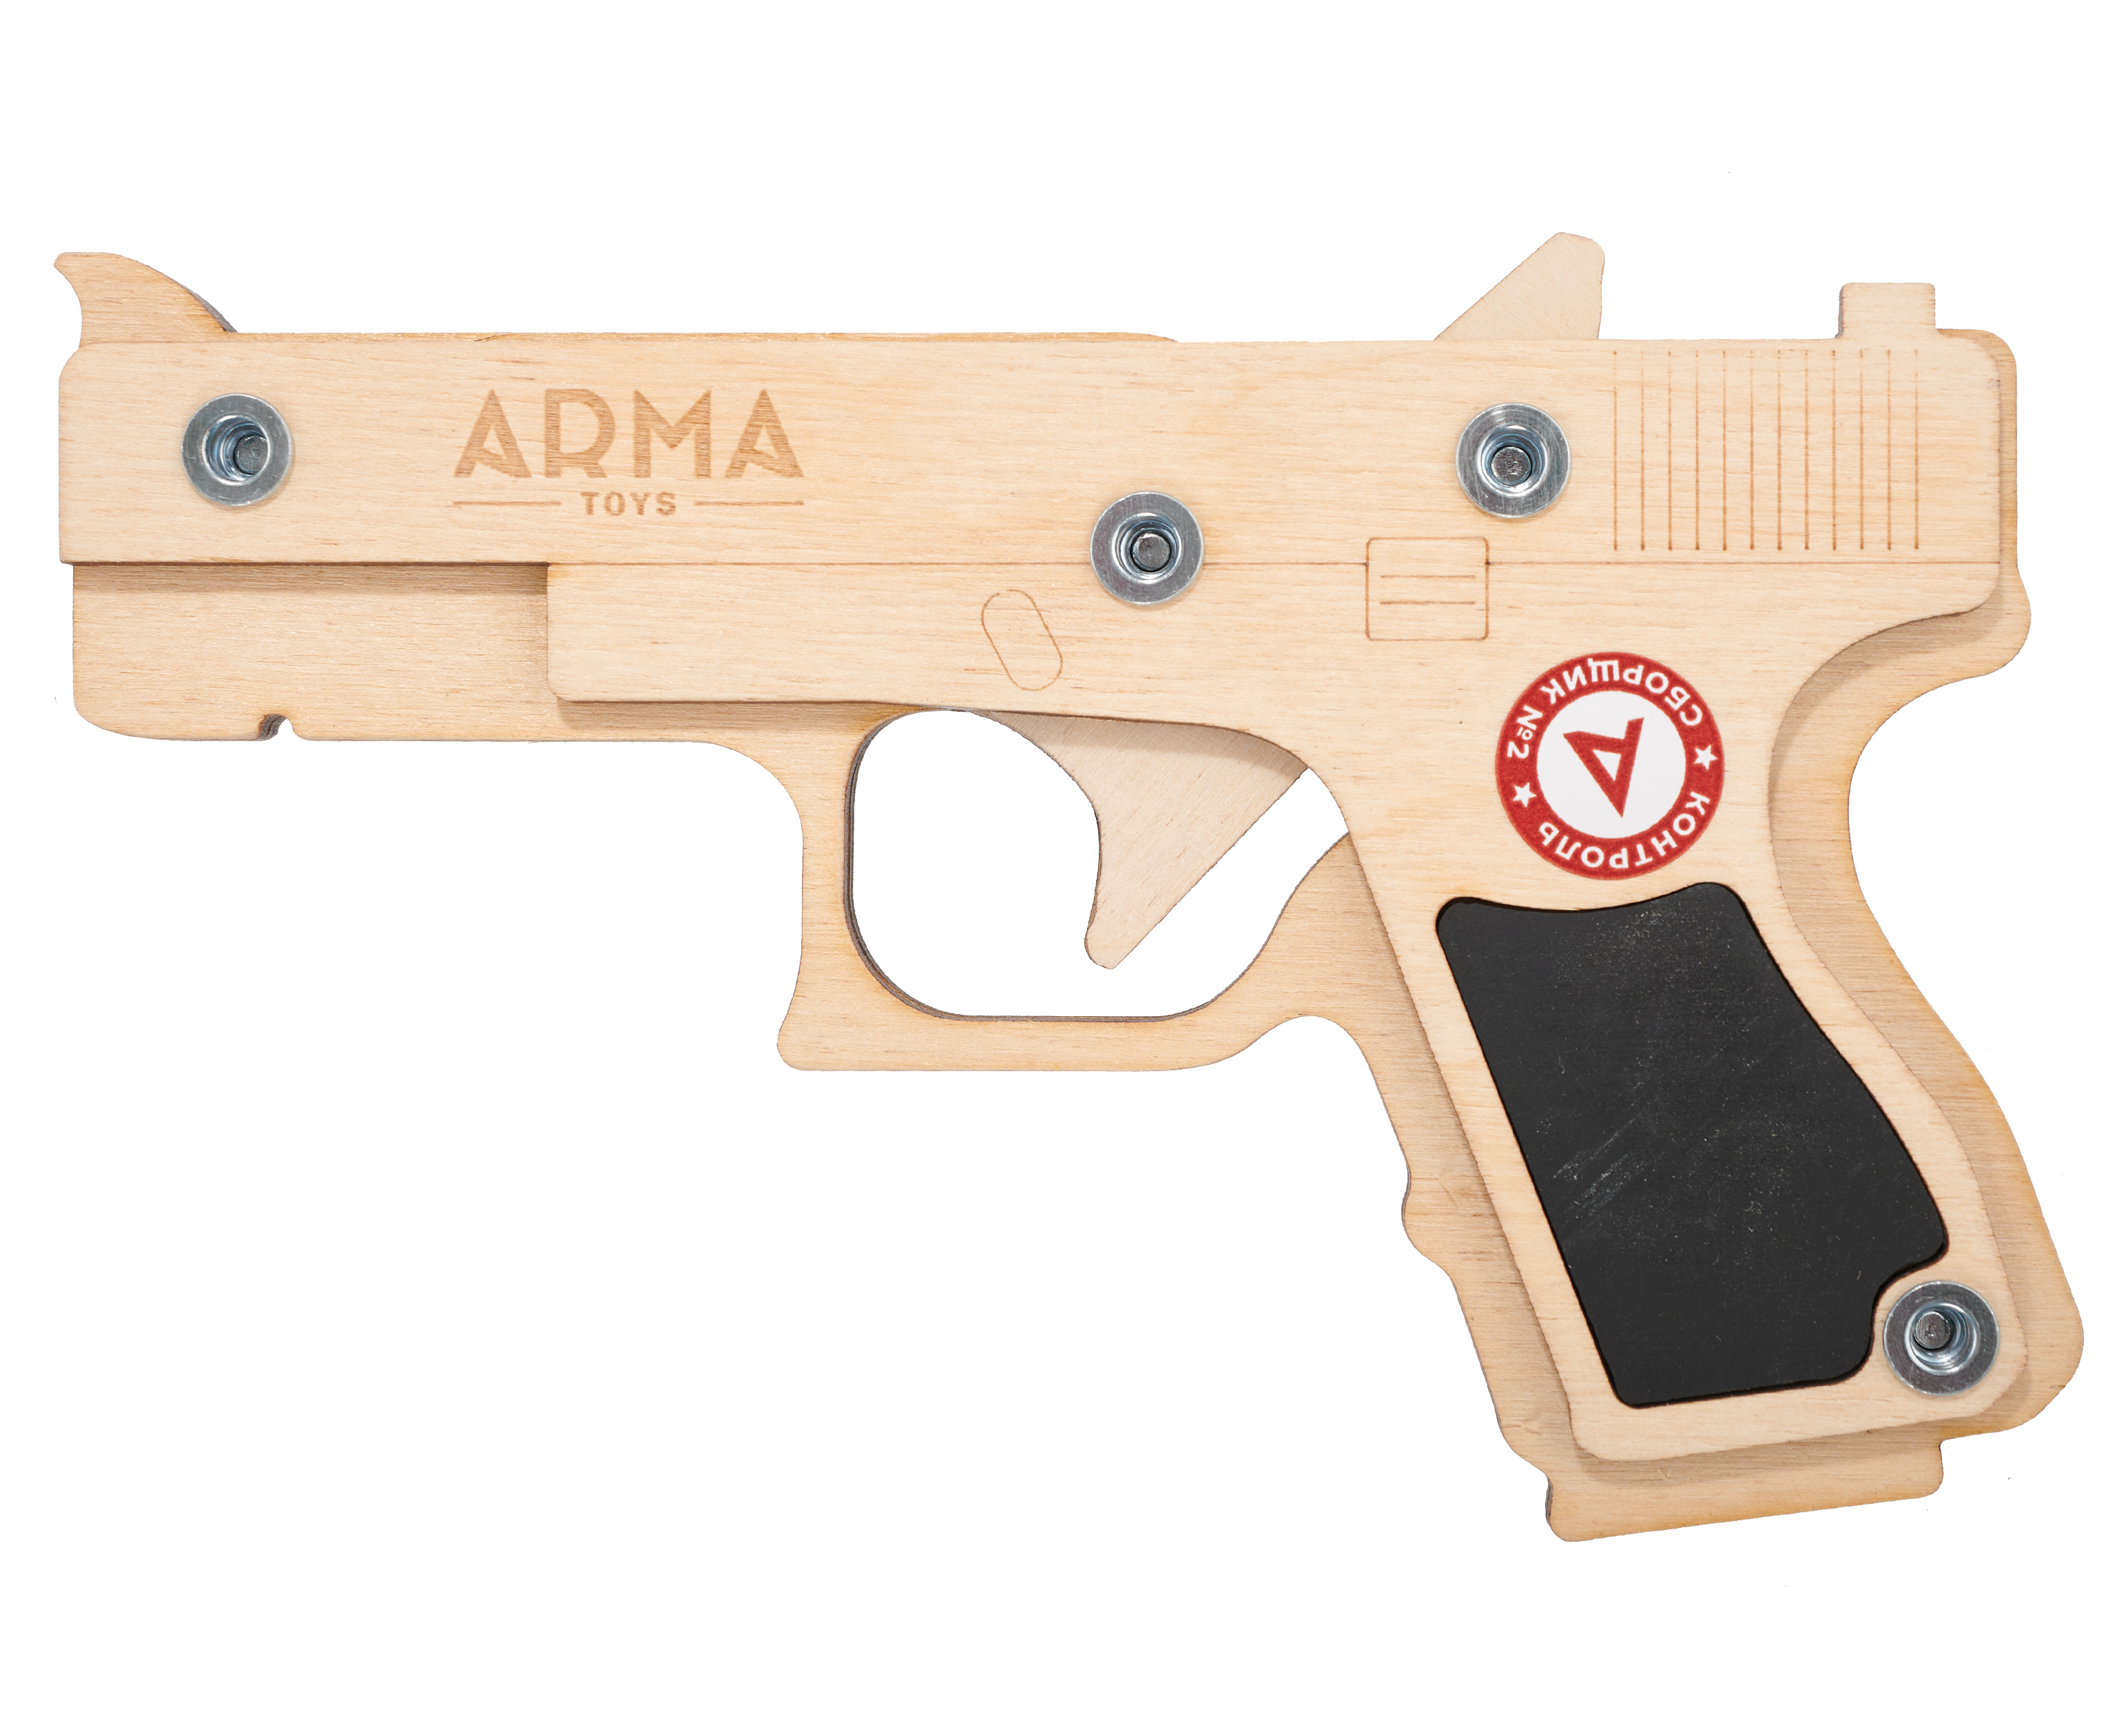 Резинкострел игрушечный Arma toys пистолет Glock макет, Compact, ATL001 резинкострел arma toys пистолет апс макет стечкин ат009